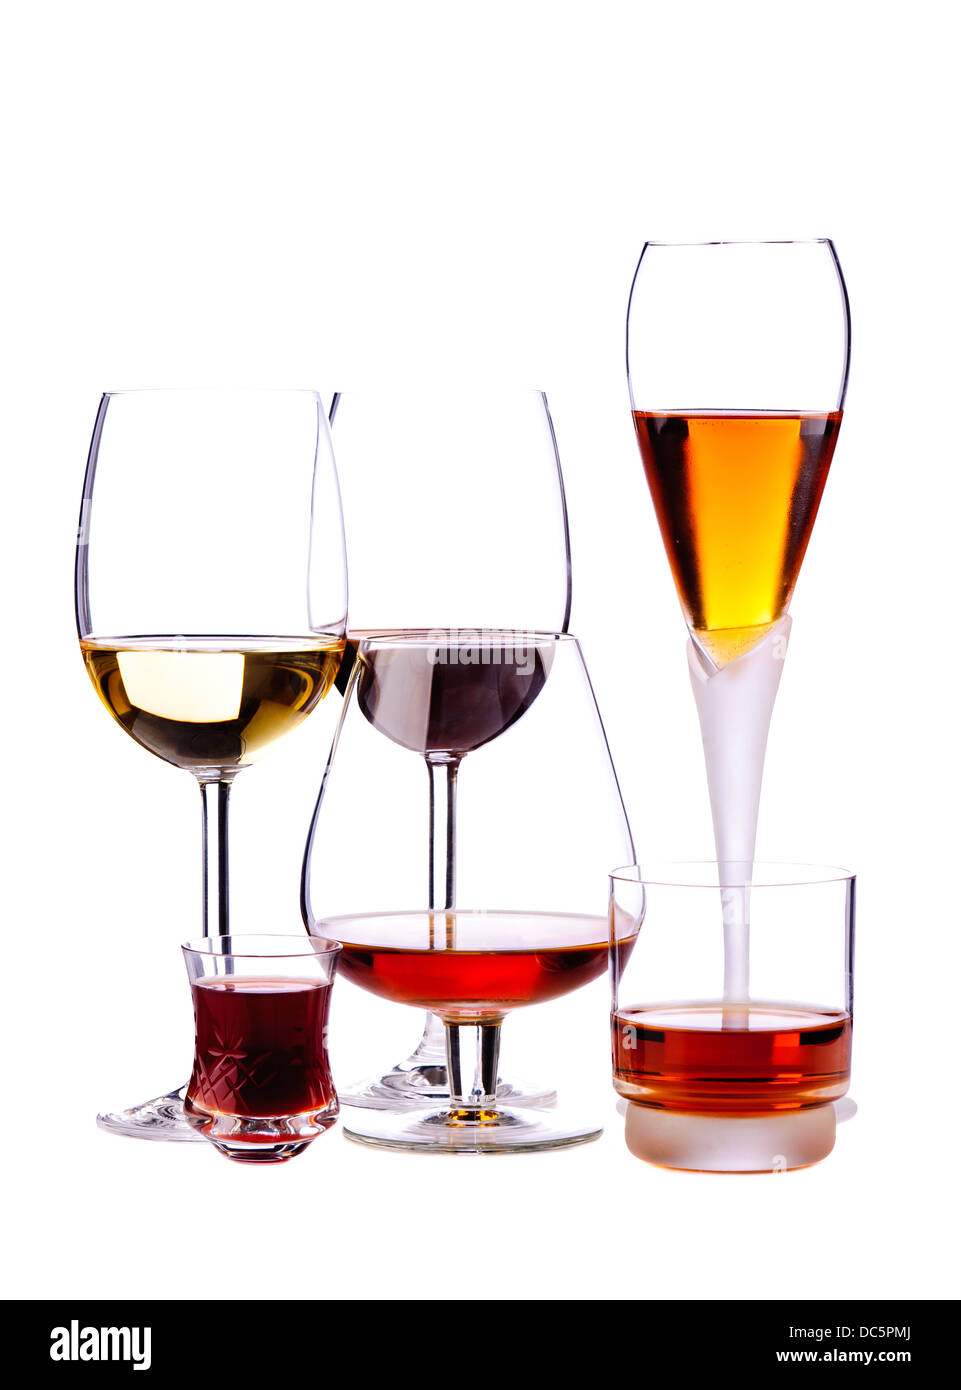 Verres de différentes boissons alcoolisées isolé sur fond blanc Banque D'Images